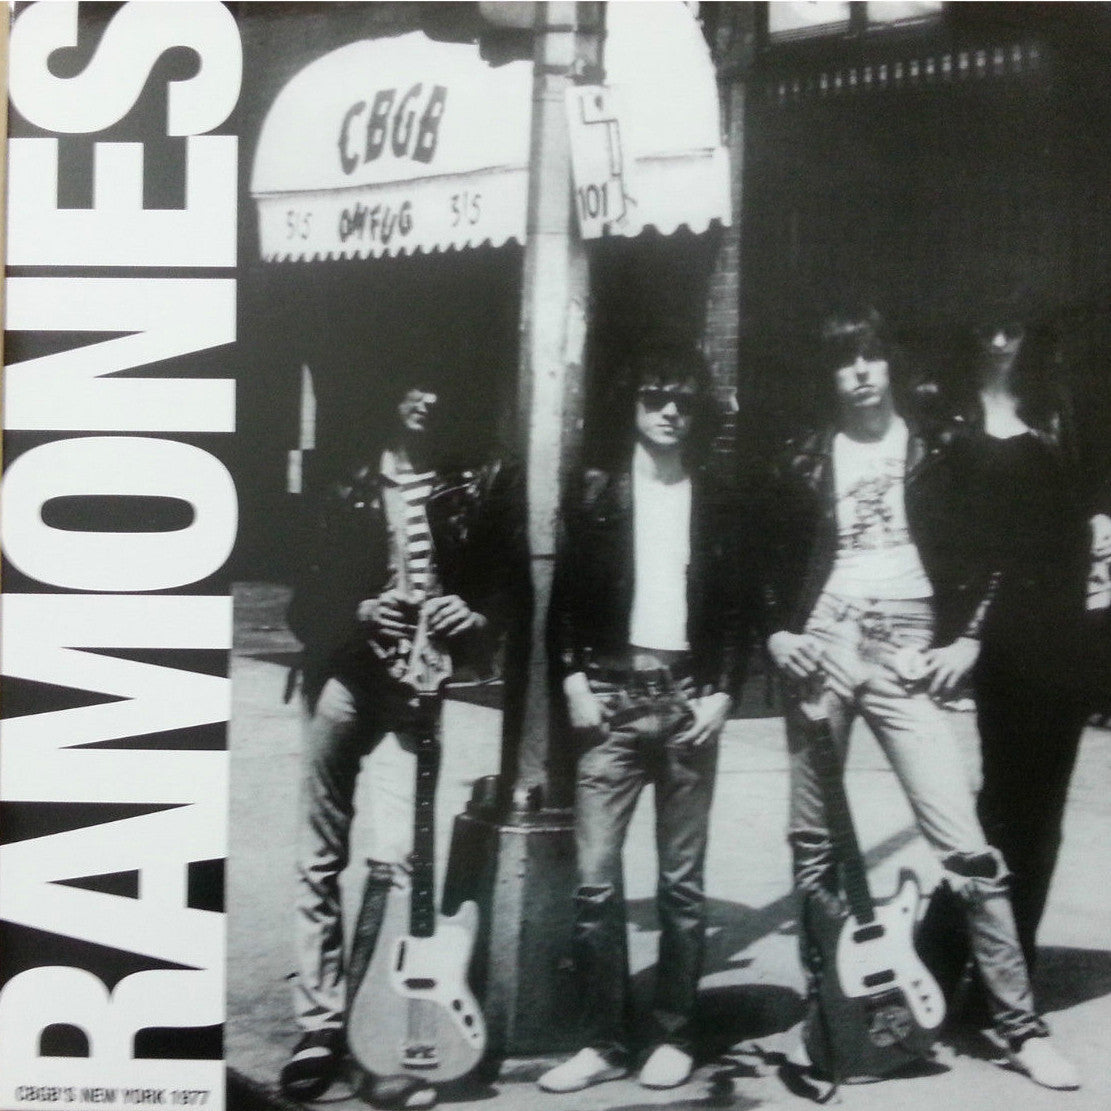 RAMONES- CBGB's New York 1977 LP - Unknown - Dead Beat Records